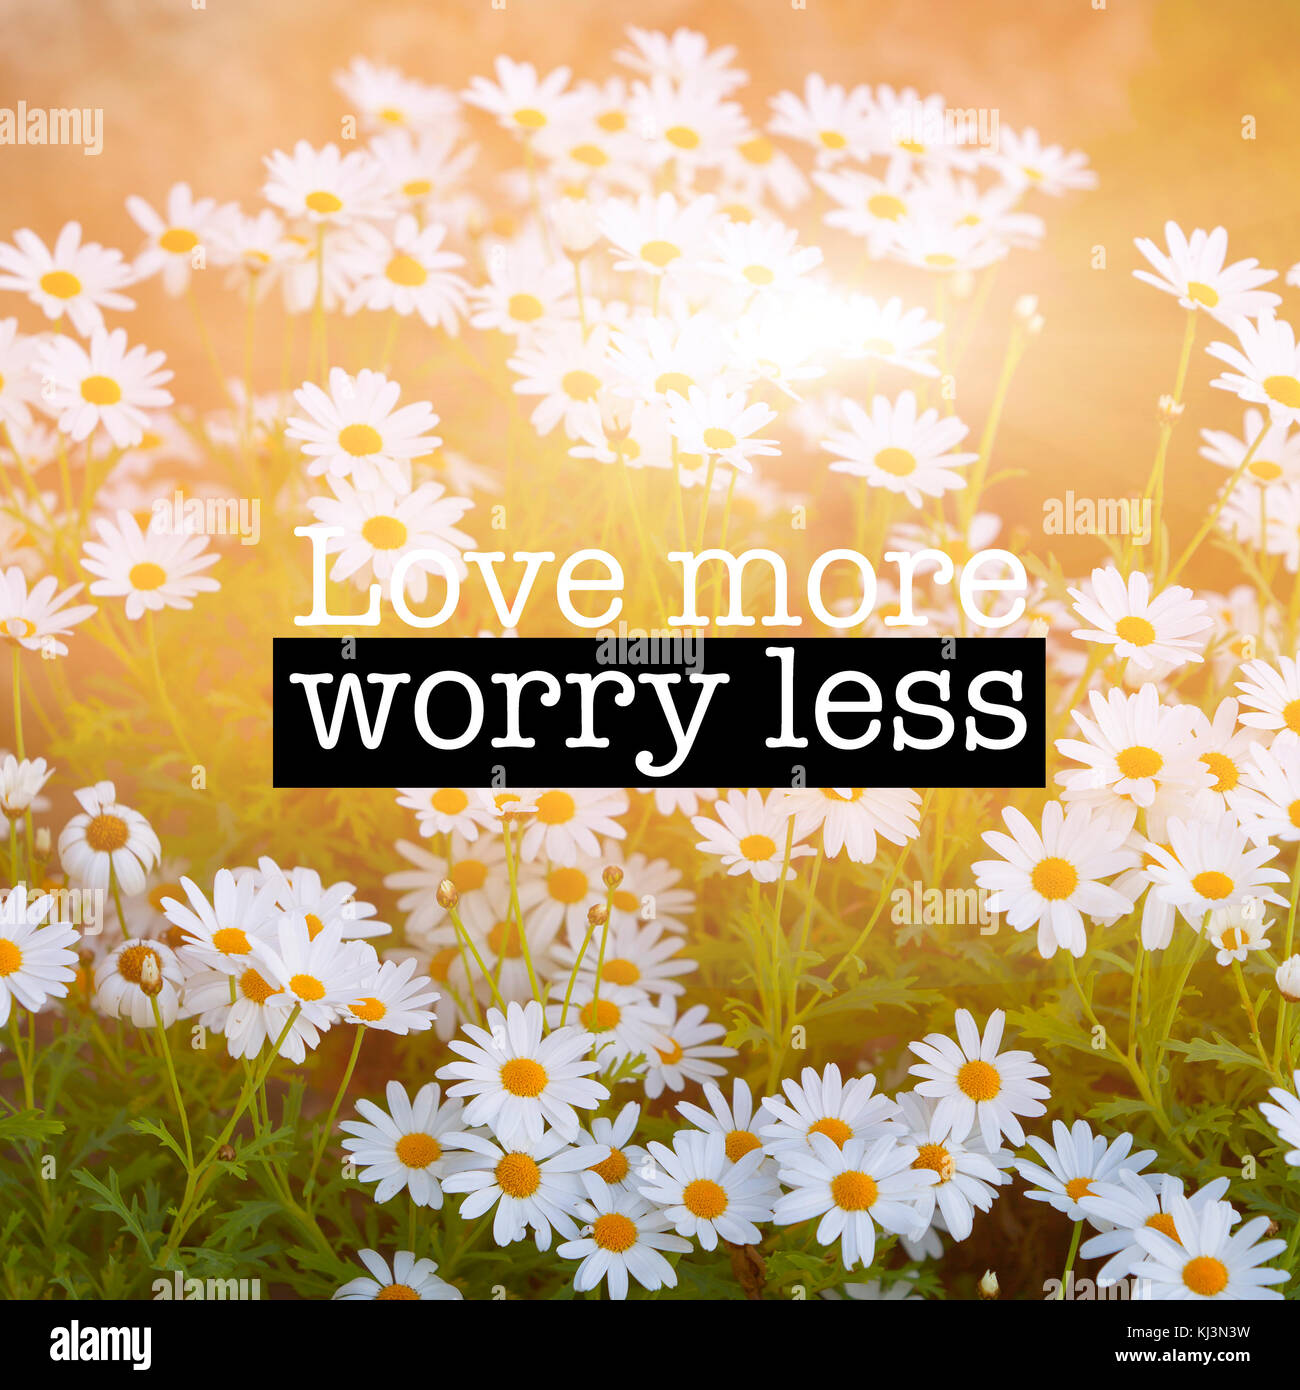 Inspirational motivation Zitat mit dem Satz "Liebe mehr weniger Sorgen", blühende Kamille Blumen Hintergrund Stockfoto